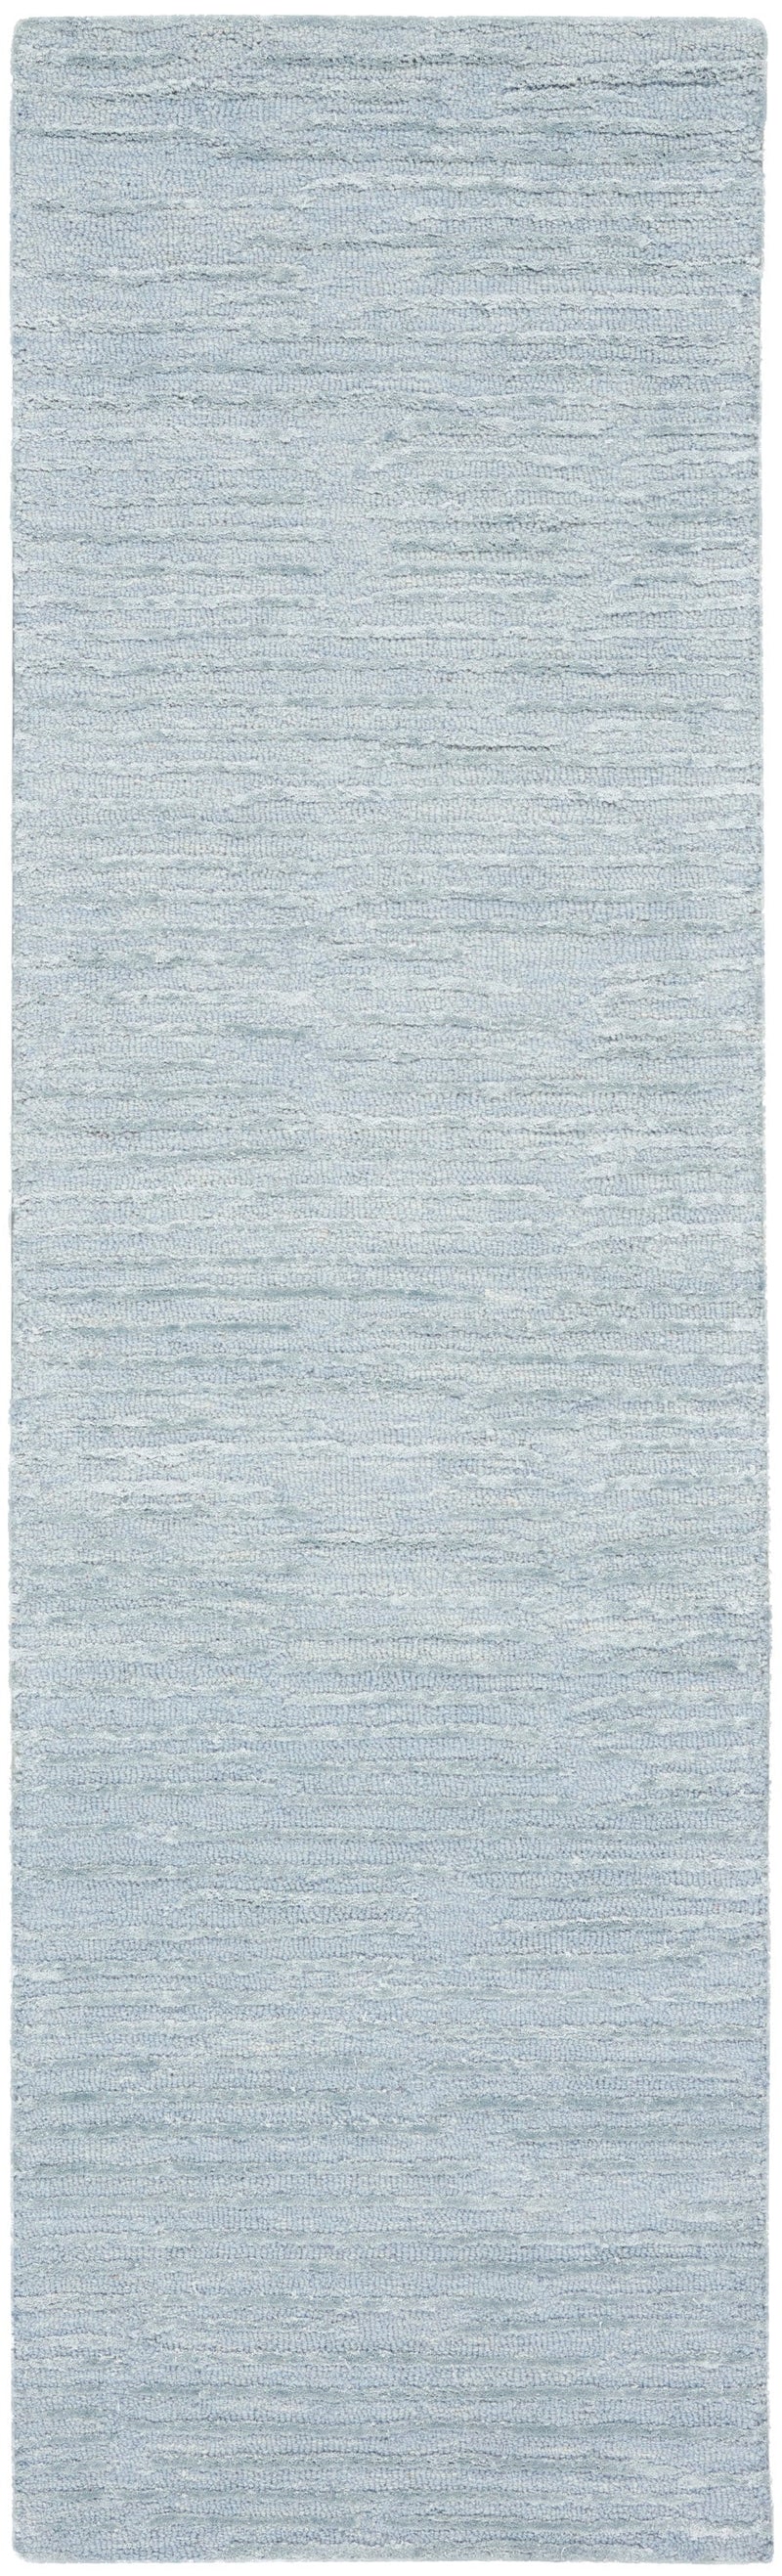 media image for ck010 linear handmade light blue rug by nourison 99446879950 redo 2 258